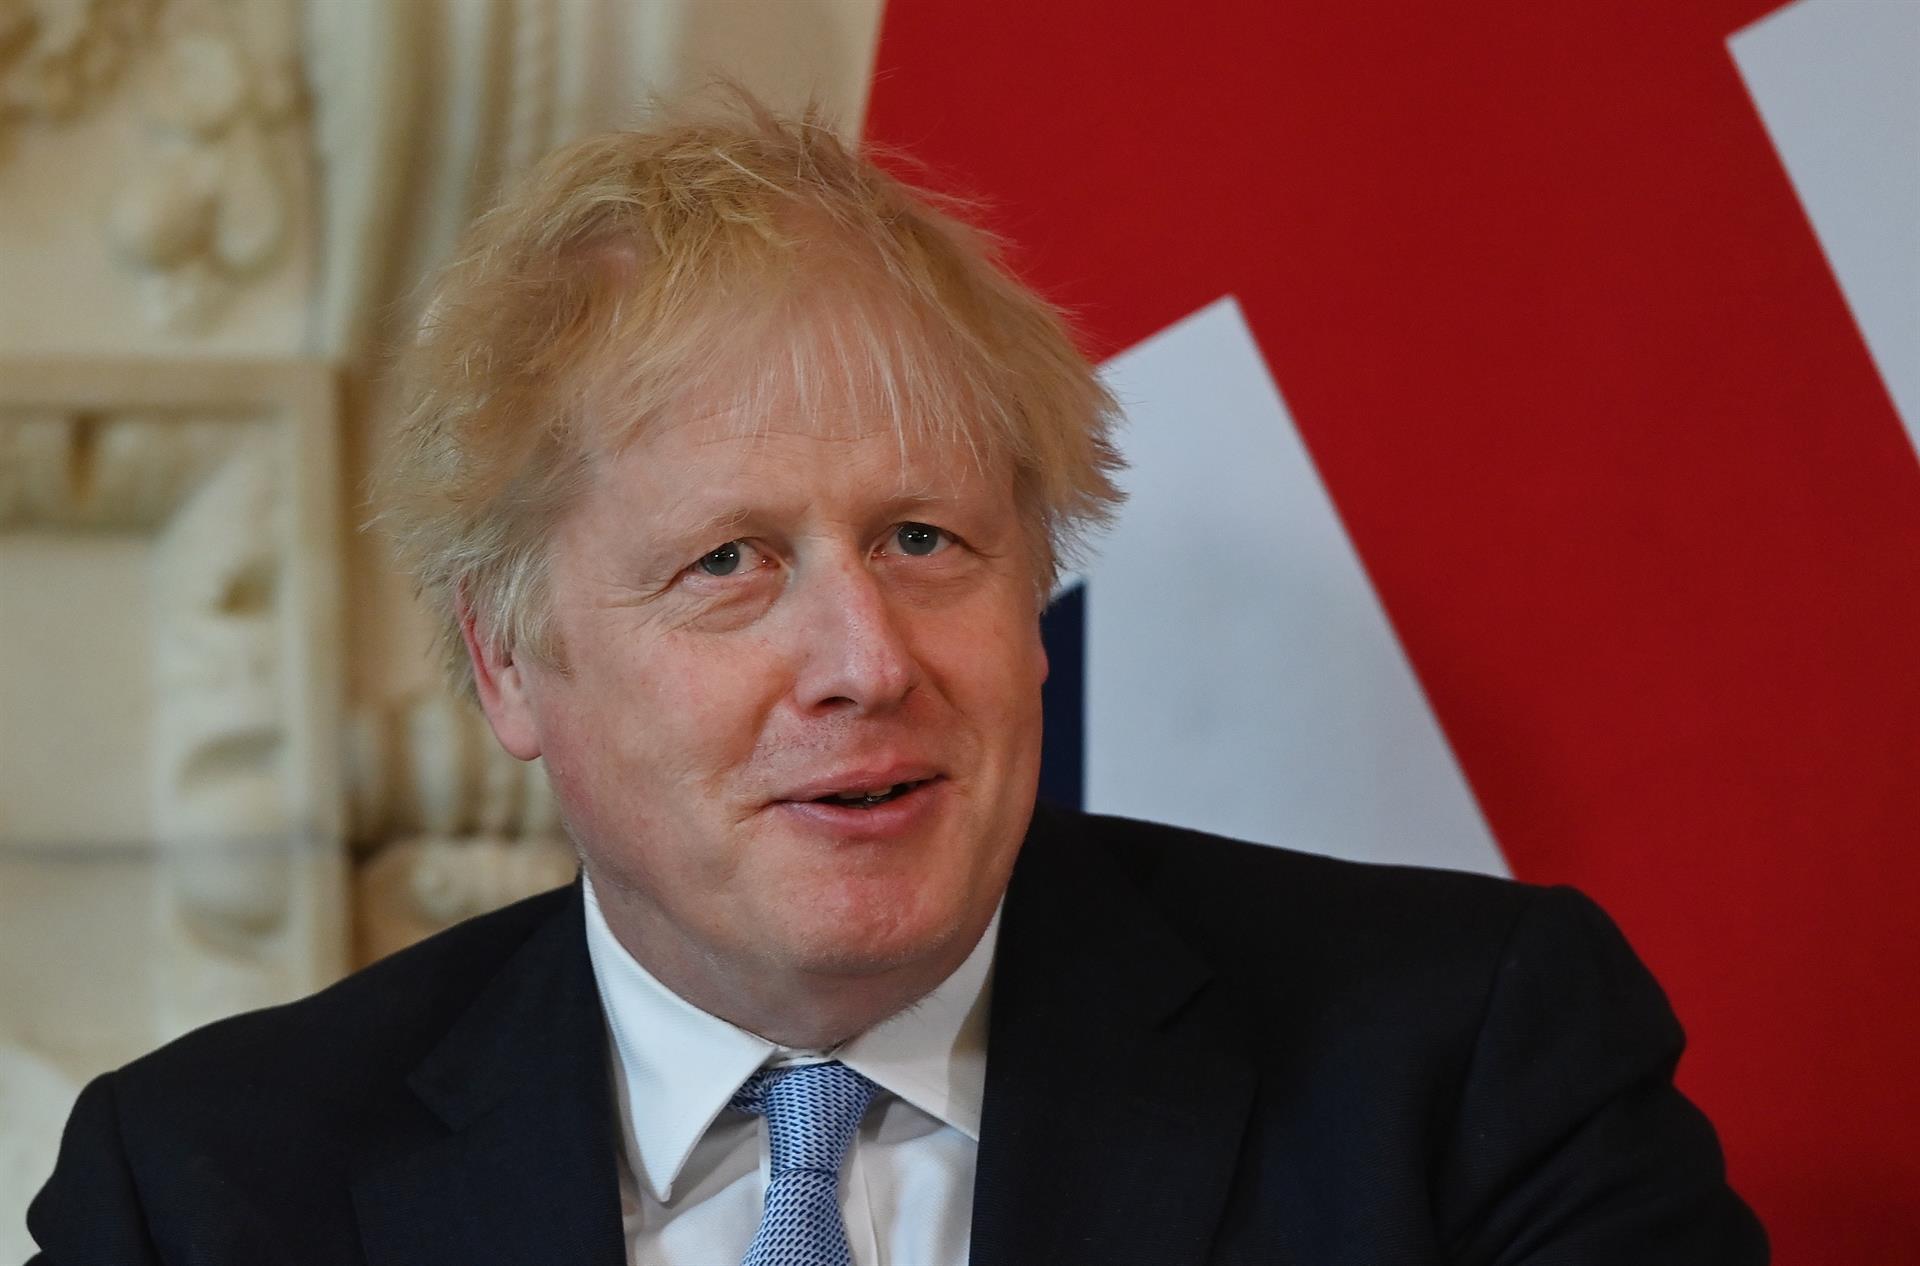 Boris Johnson promete “seguir adelante” con su trabajo pese a rebelión en sus filas